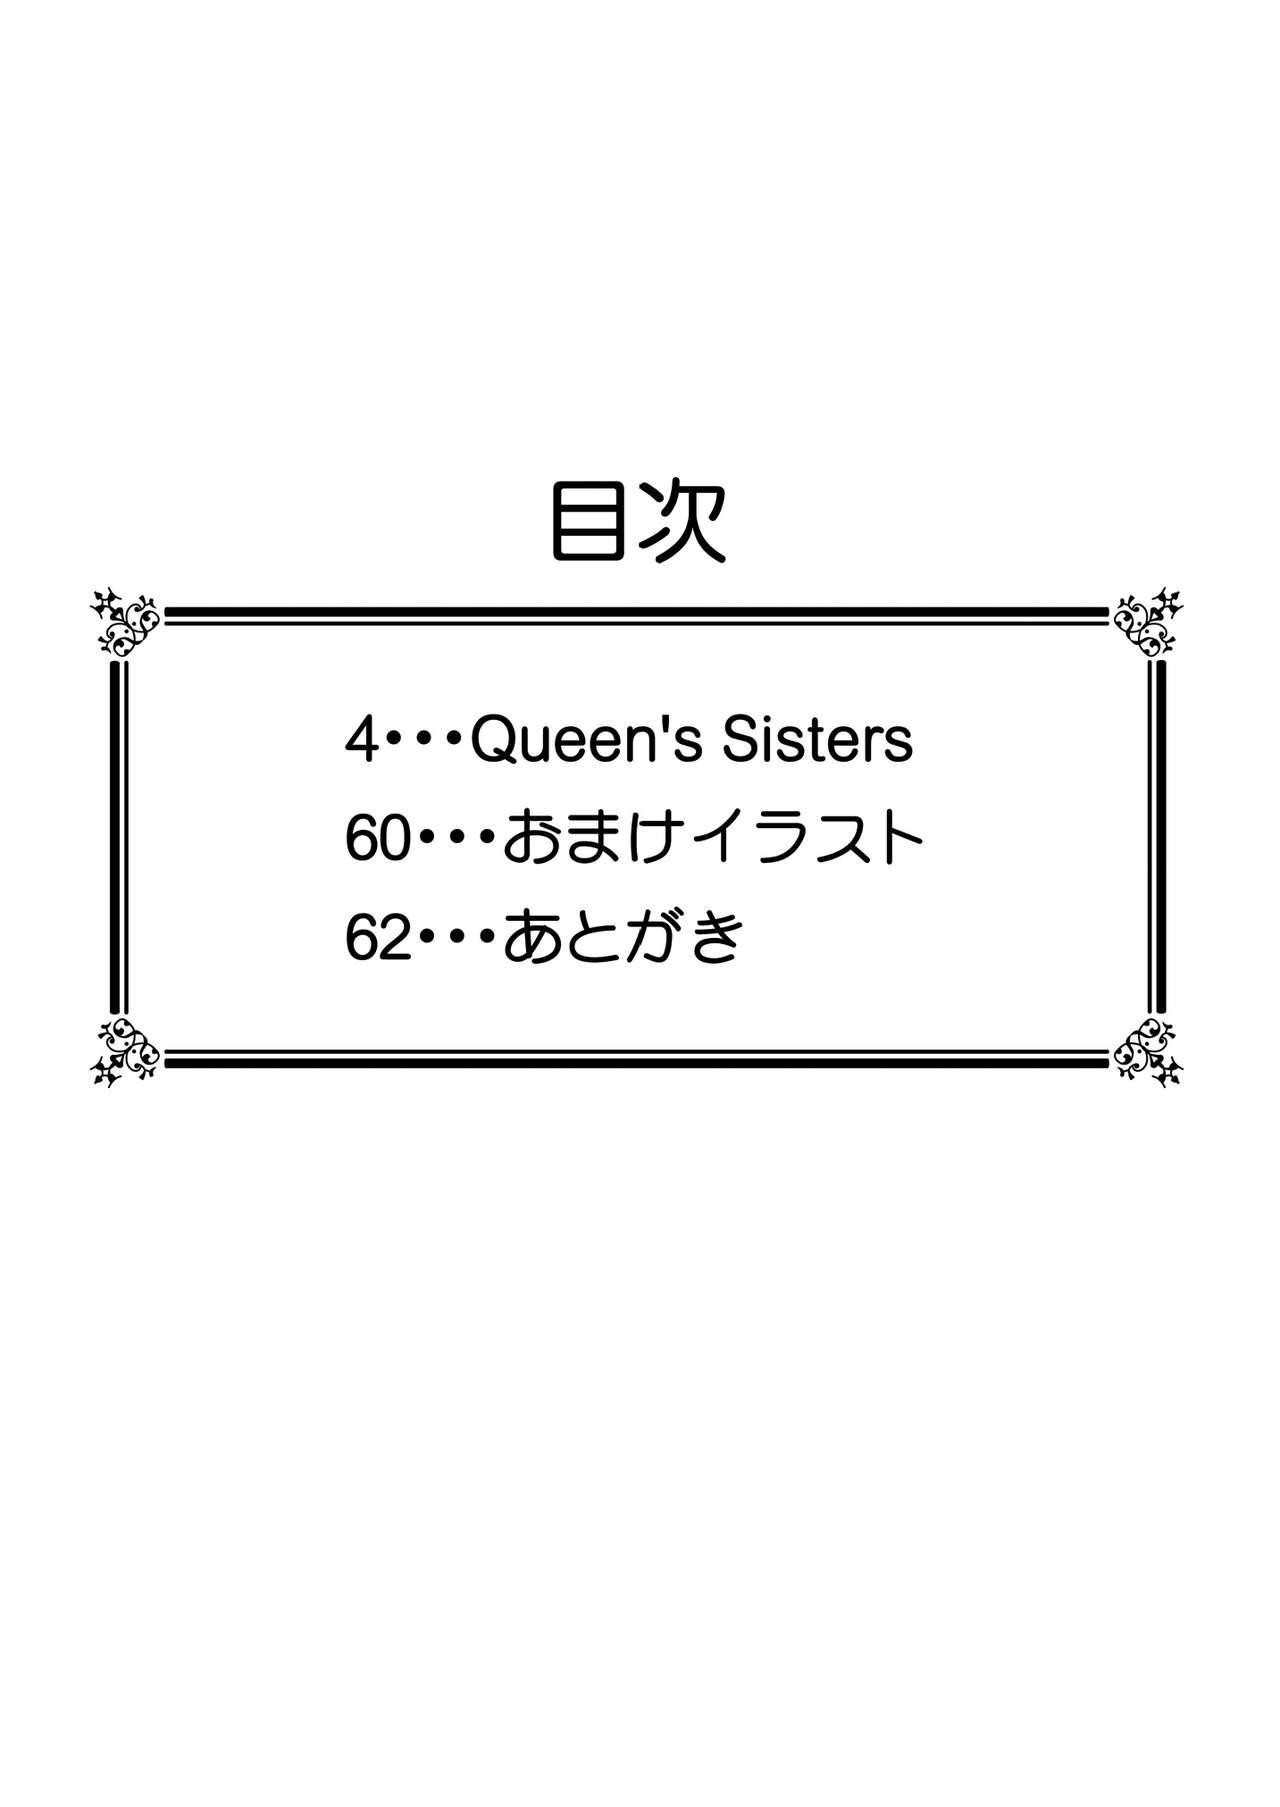 Queen's Sisters 3